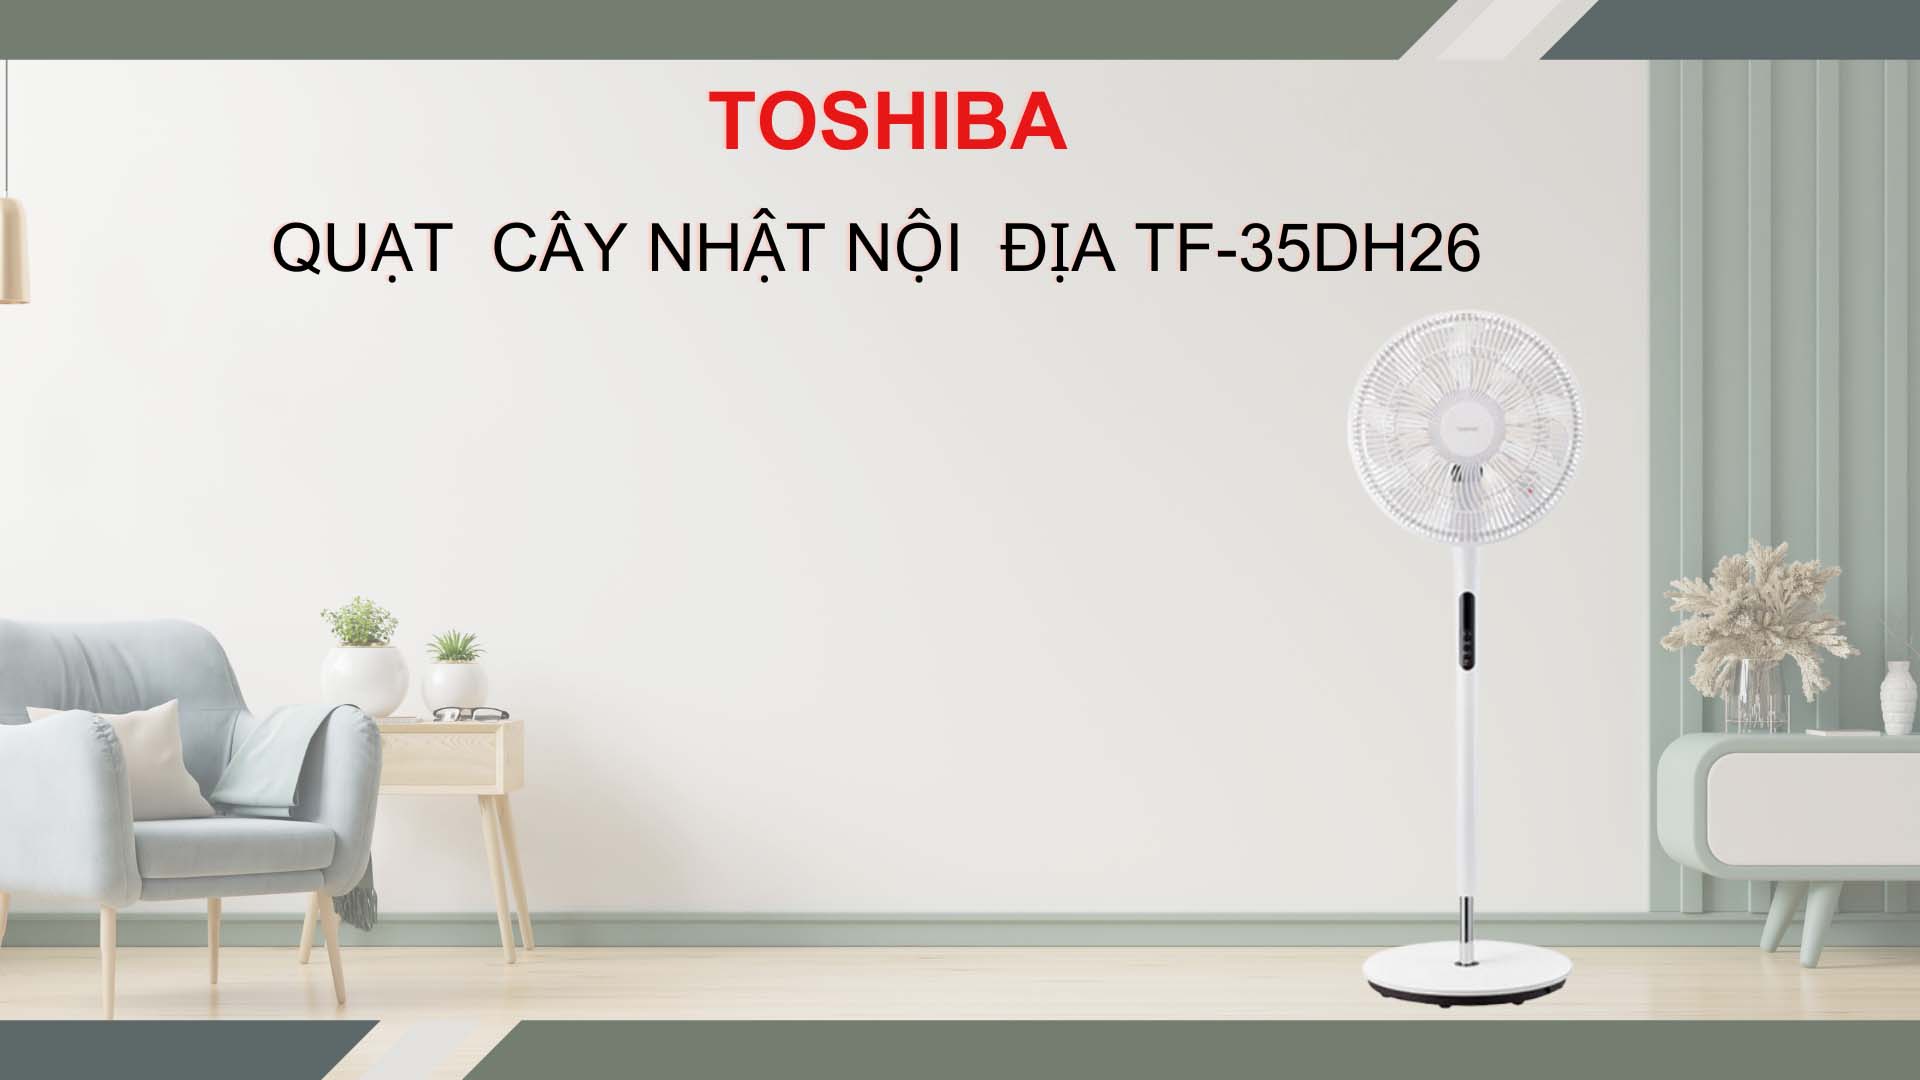 quat-cay-toshiba-TF-35DH26